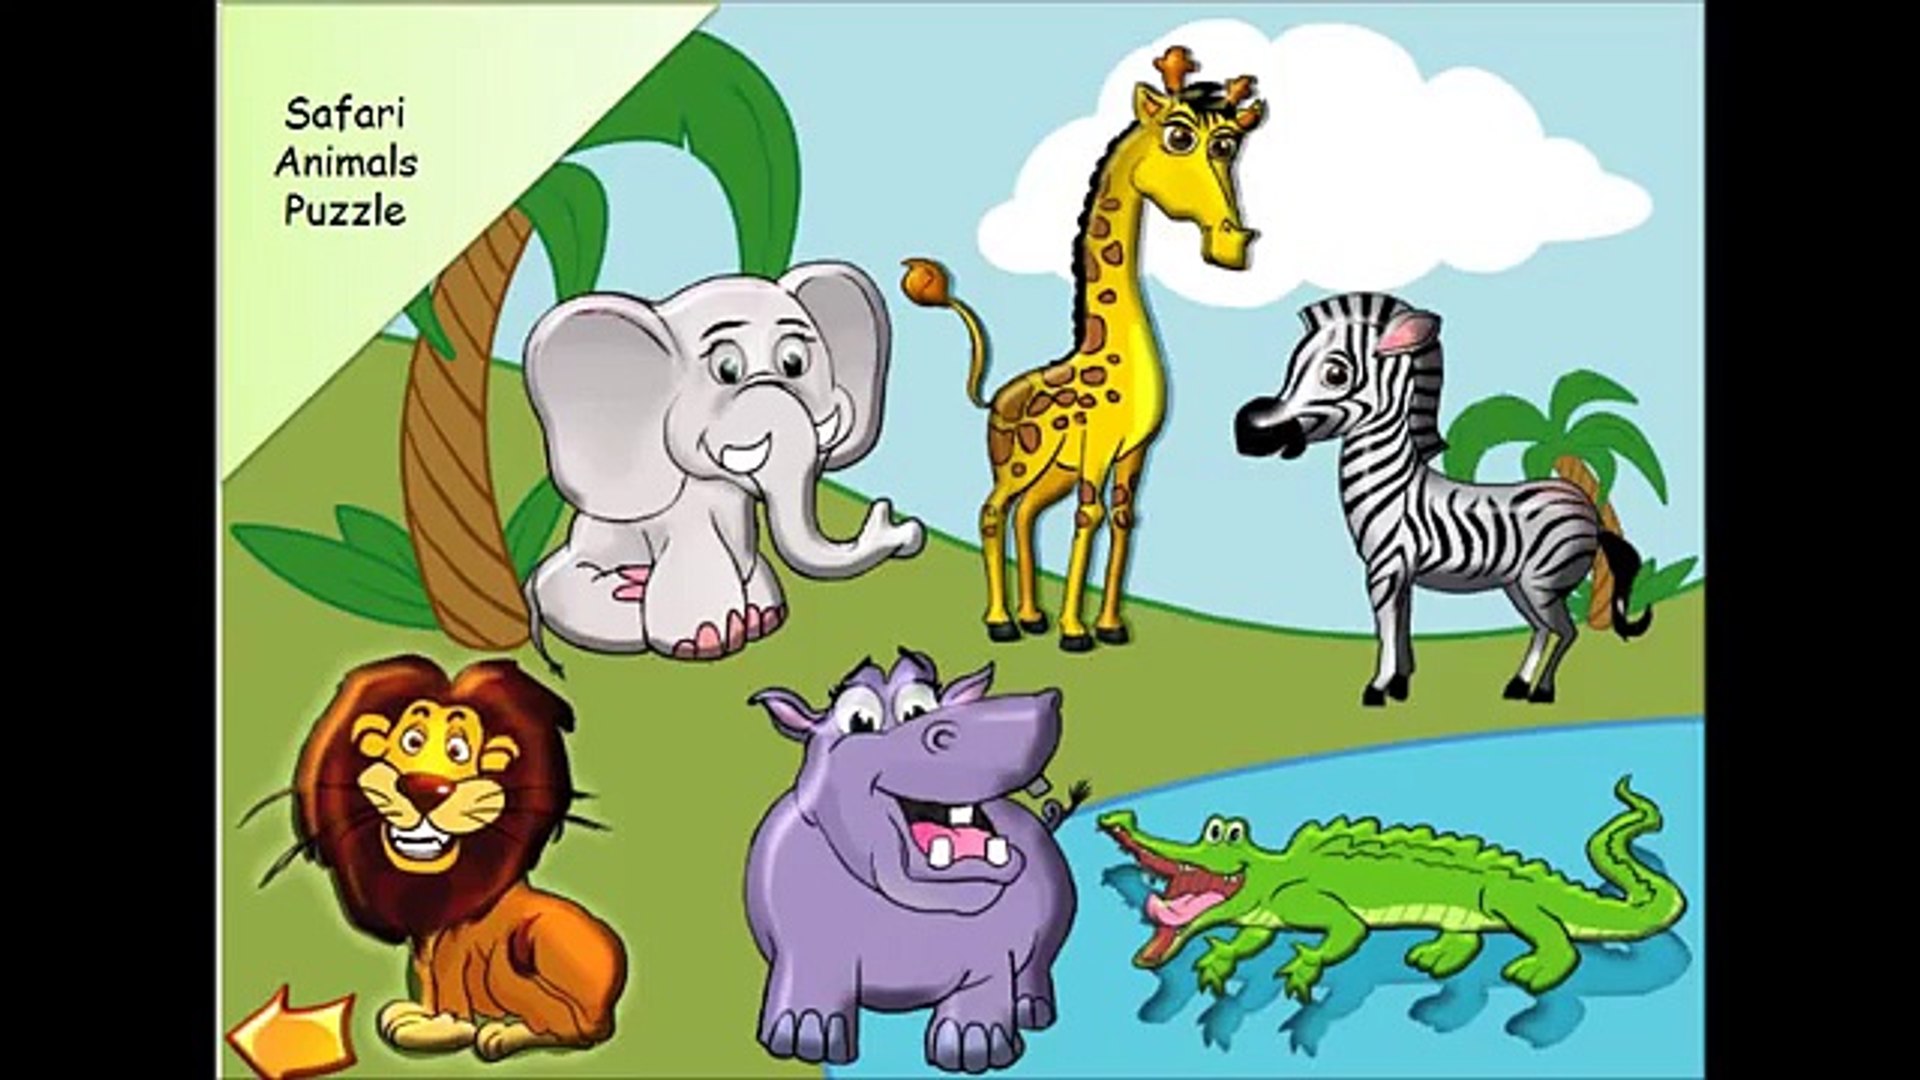 Животные с озвучкой для детей. Животные Африки. Животные Африки для детей. Изображения животных для детей. Животные Африки дл ядетй.